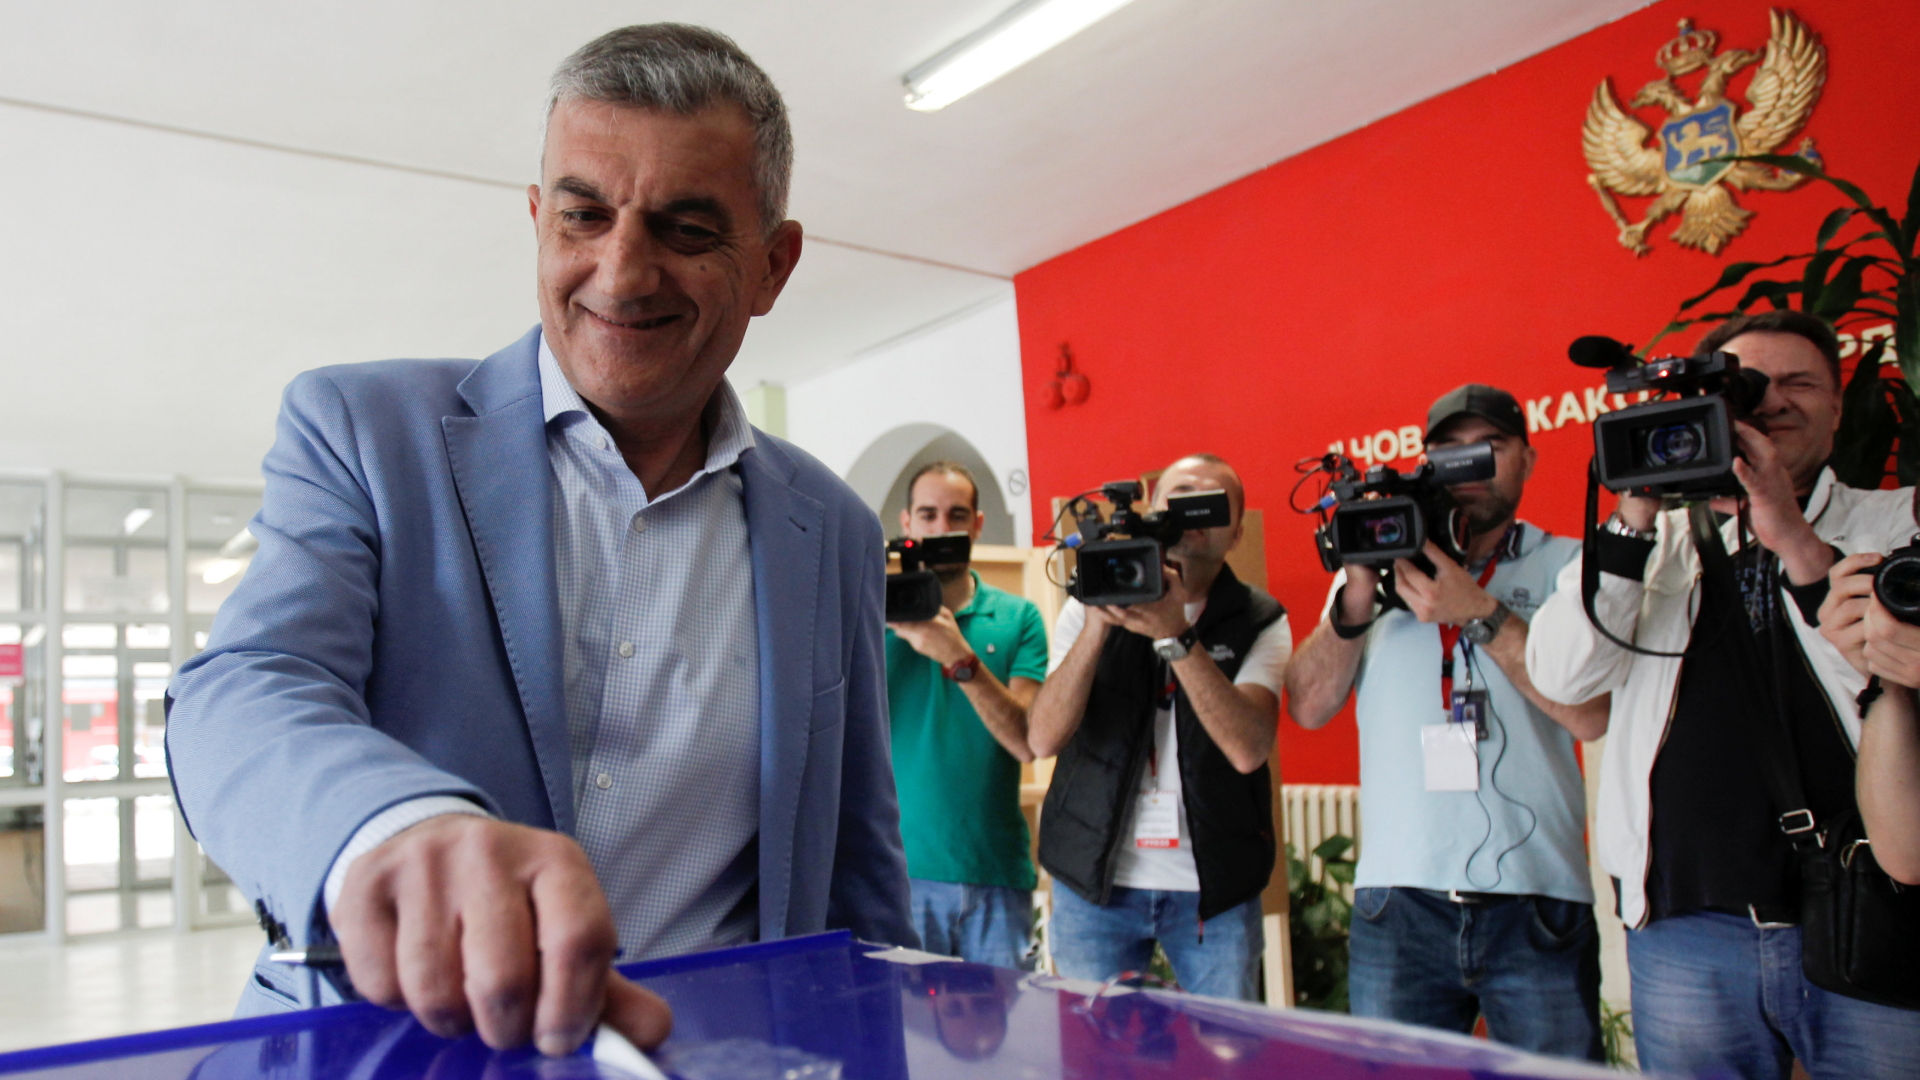 Der Zweitplatzierte parteilose Wirtschaftsexperte Milan Bojanic bei der Abgabe seiner Stimme in Montenegro. | REUTERS